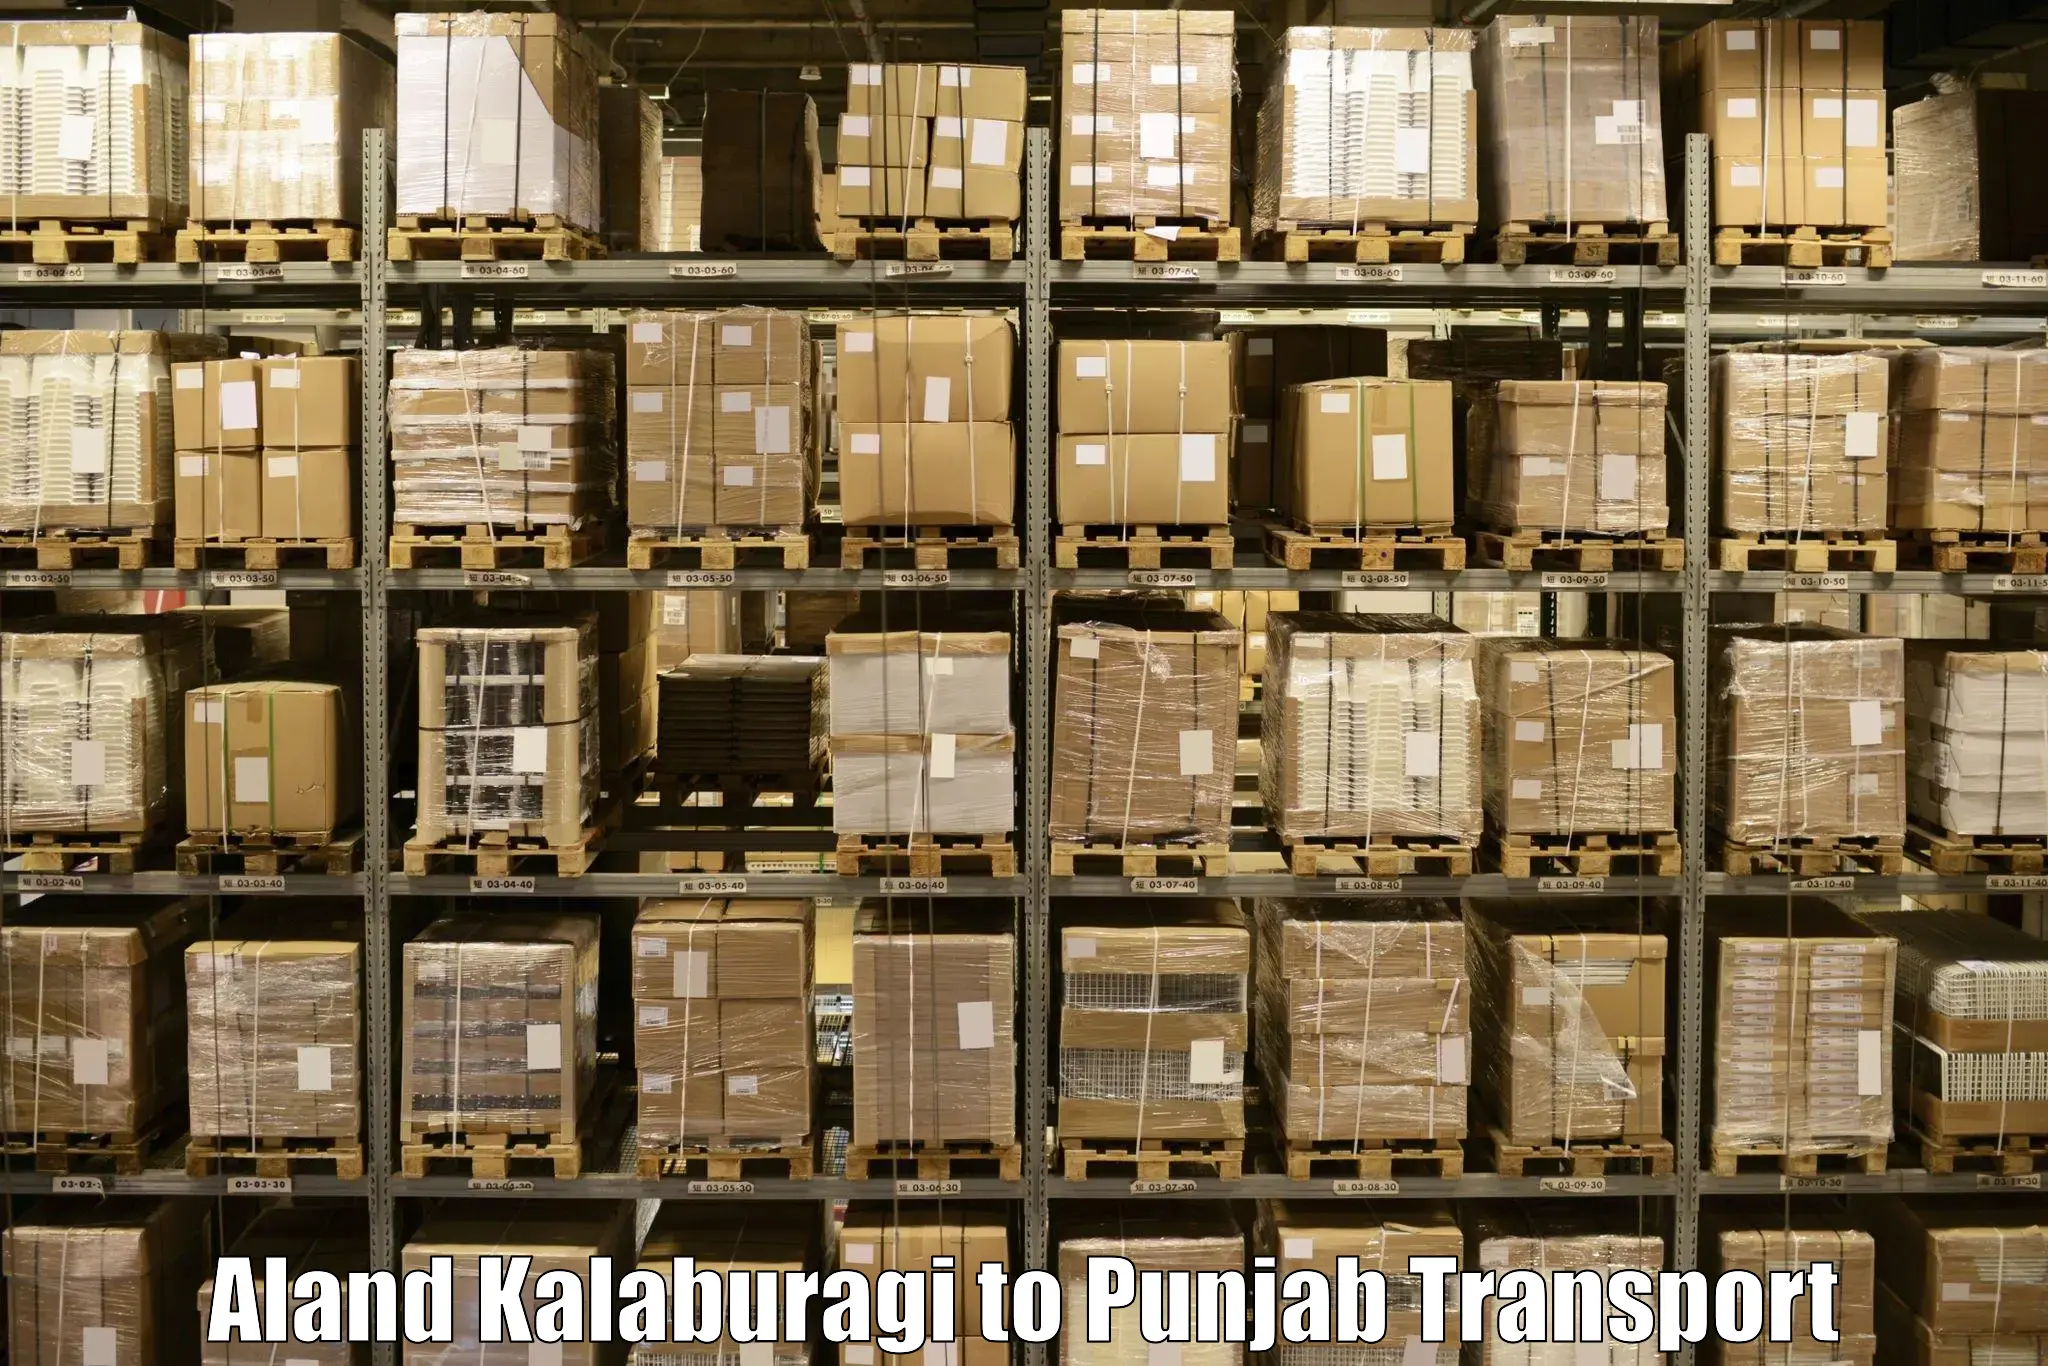 Transport in sharing Aland Kalaburagi to Kotkapura